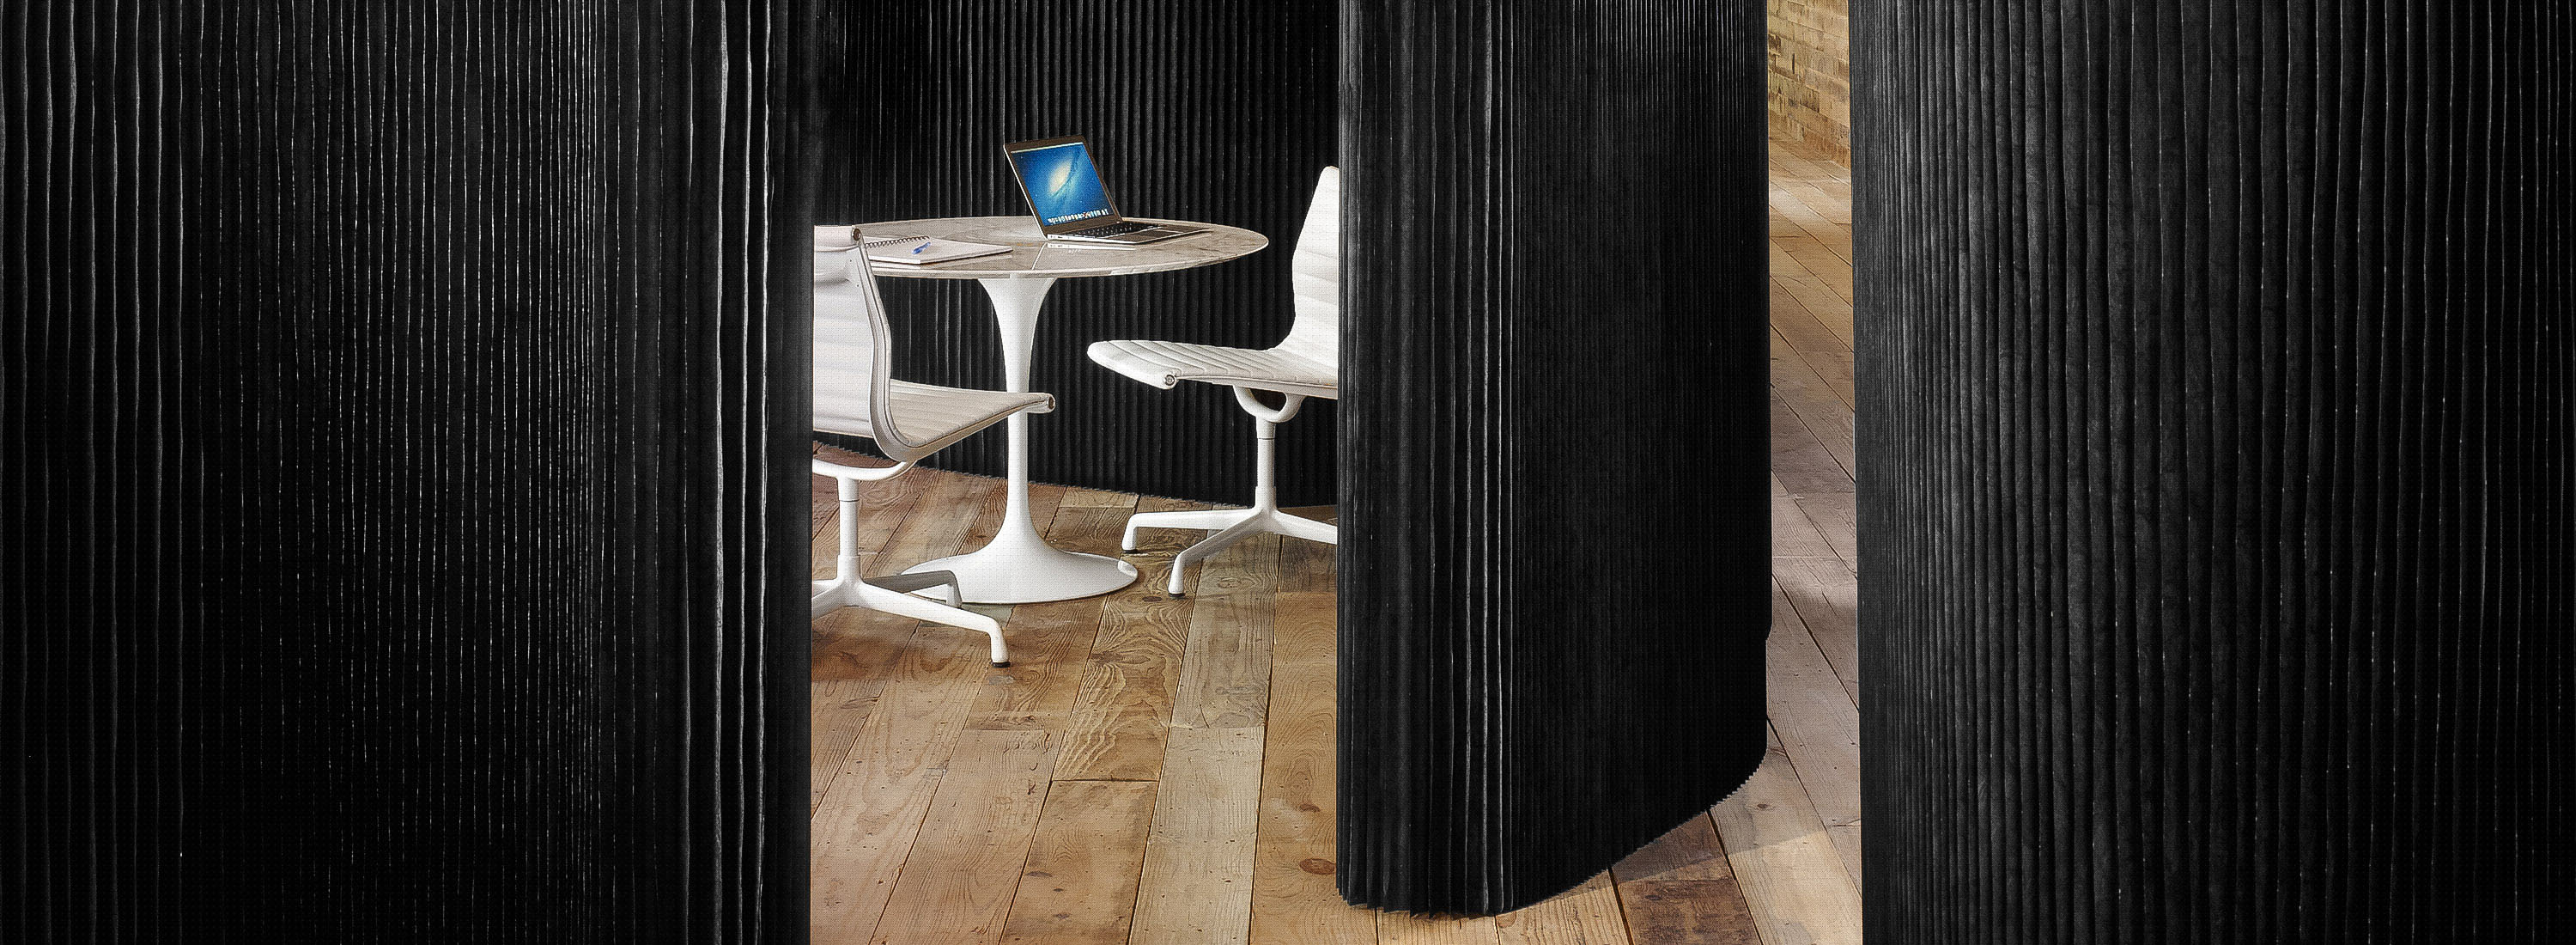 Acoustic partitions for flexible decor